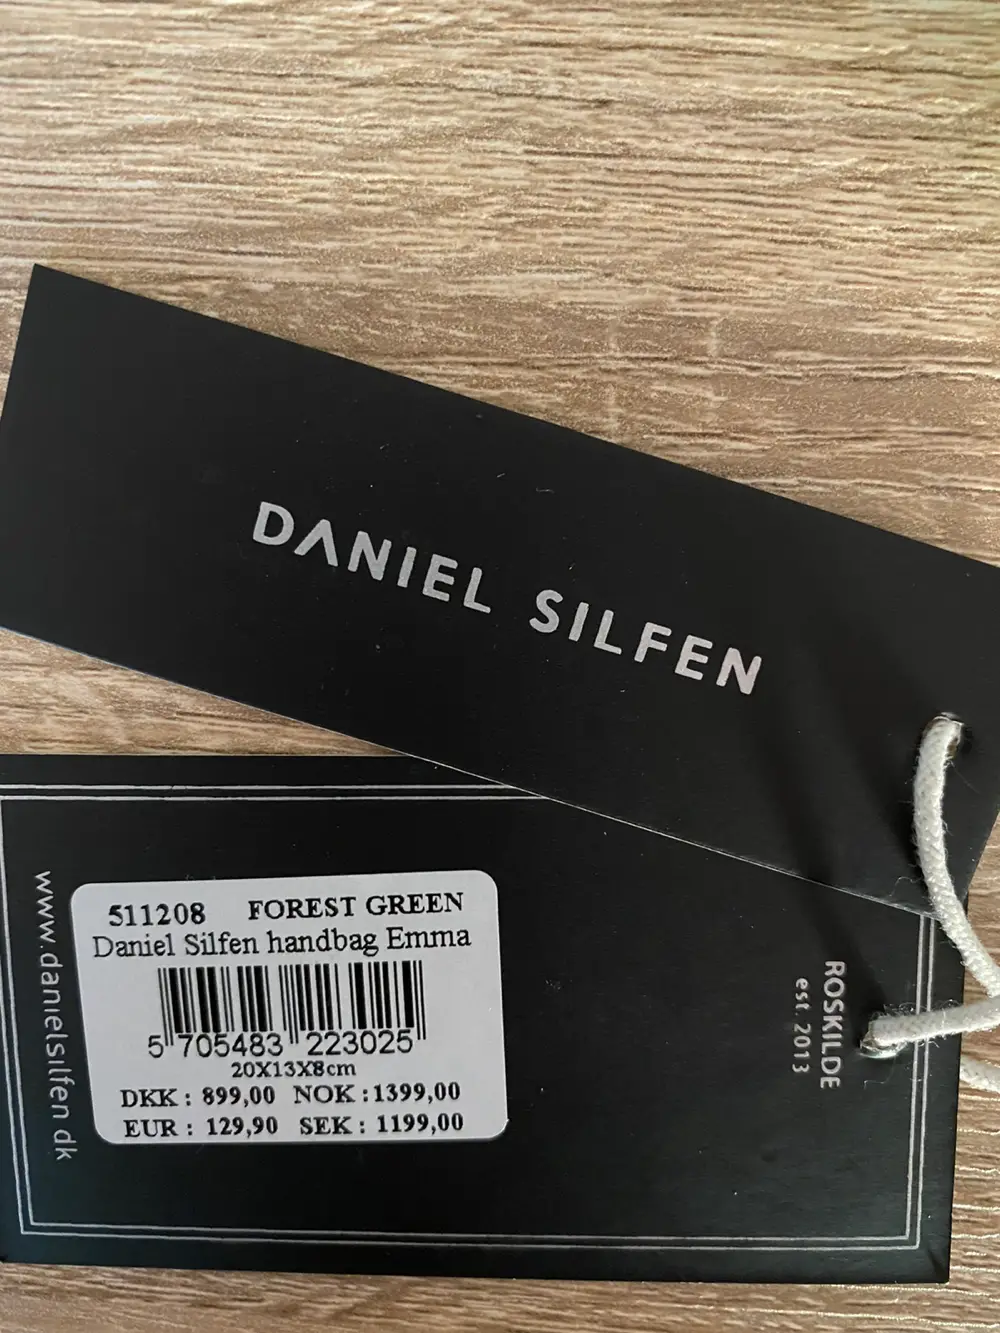 Køb Daniel Silfen i ruskind af Eva på Reshopper · Shop secondhand til børn, mor og bolig